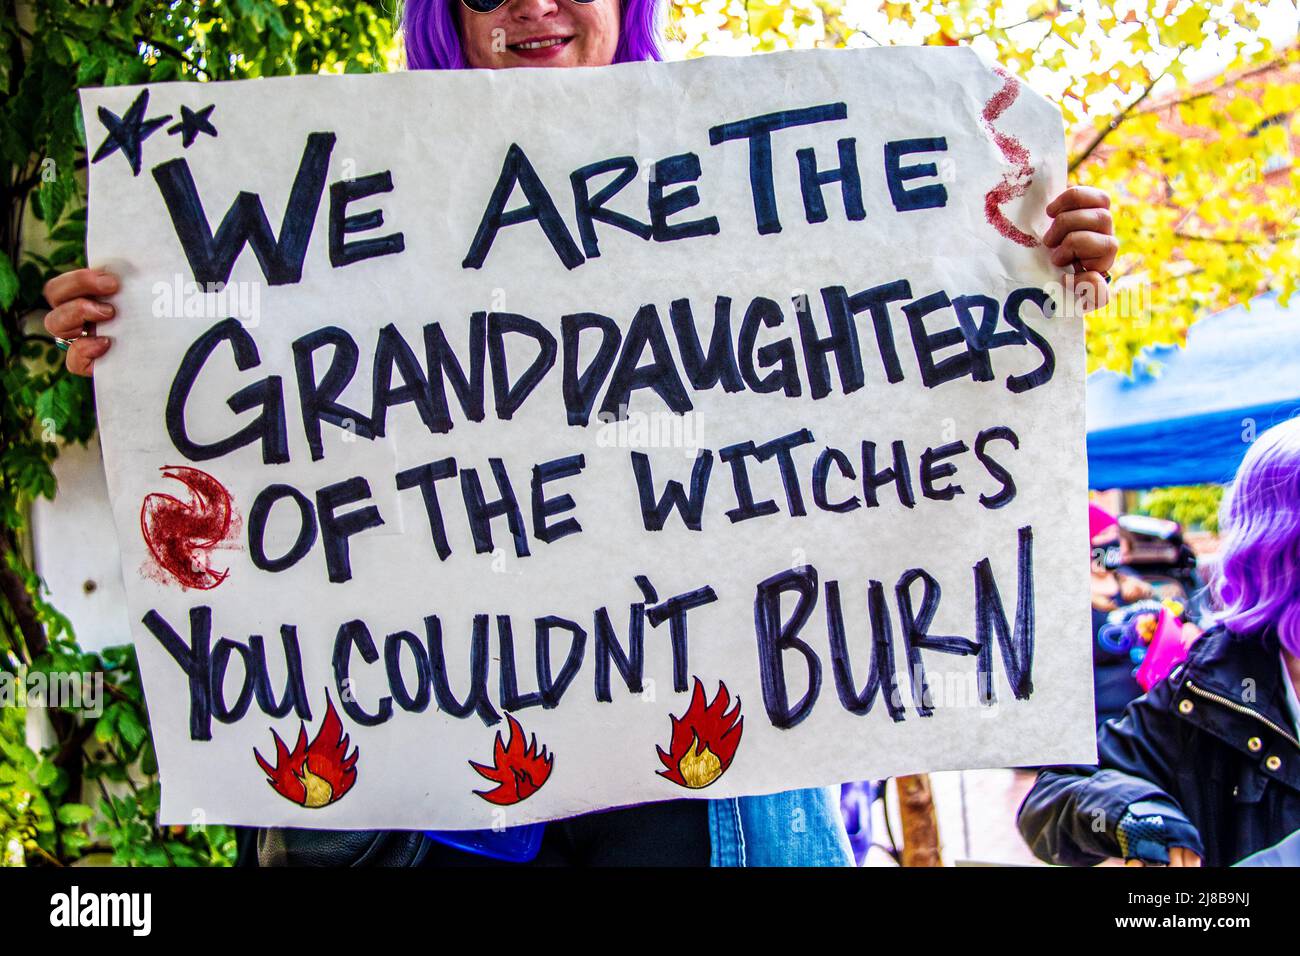 2021-10-02 Tulsa USA - Frau mit violettem Haar, die Schild mit der Aufschrift hält Wir sind die Enkelinnen der Hexen, die man am hellen Herbsttag nicht verbrennen konnte Stockfoto